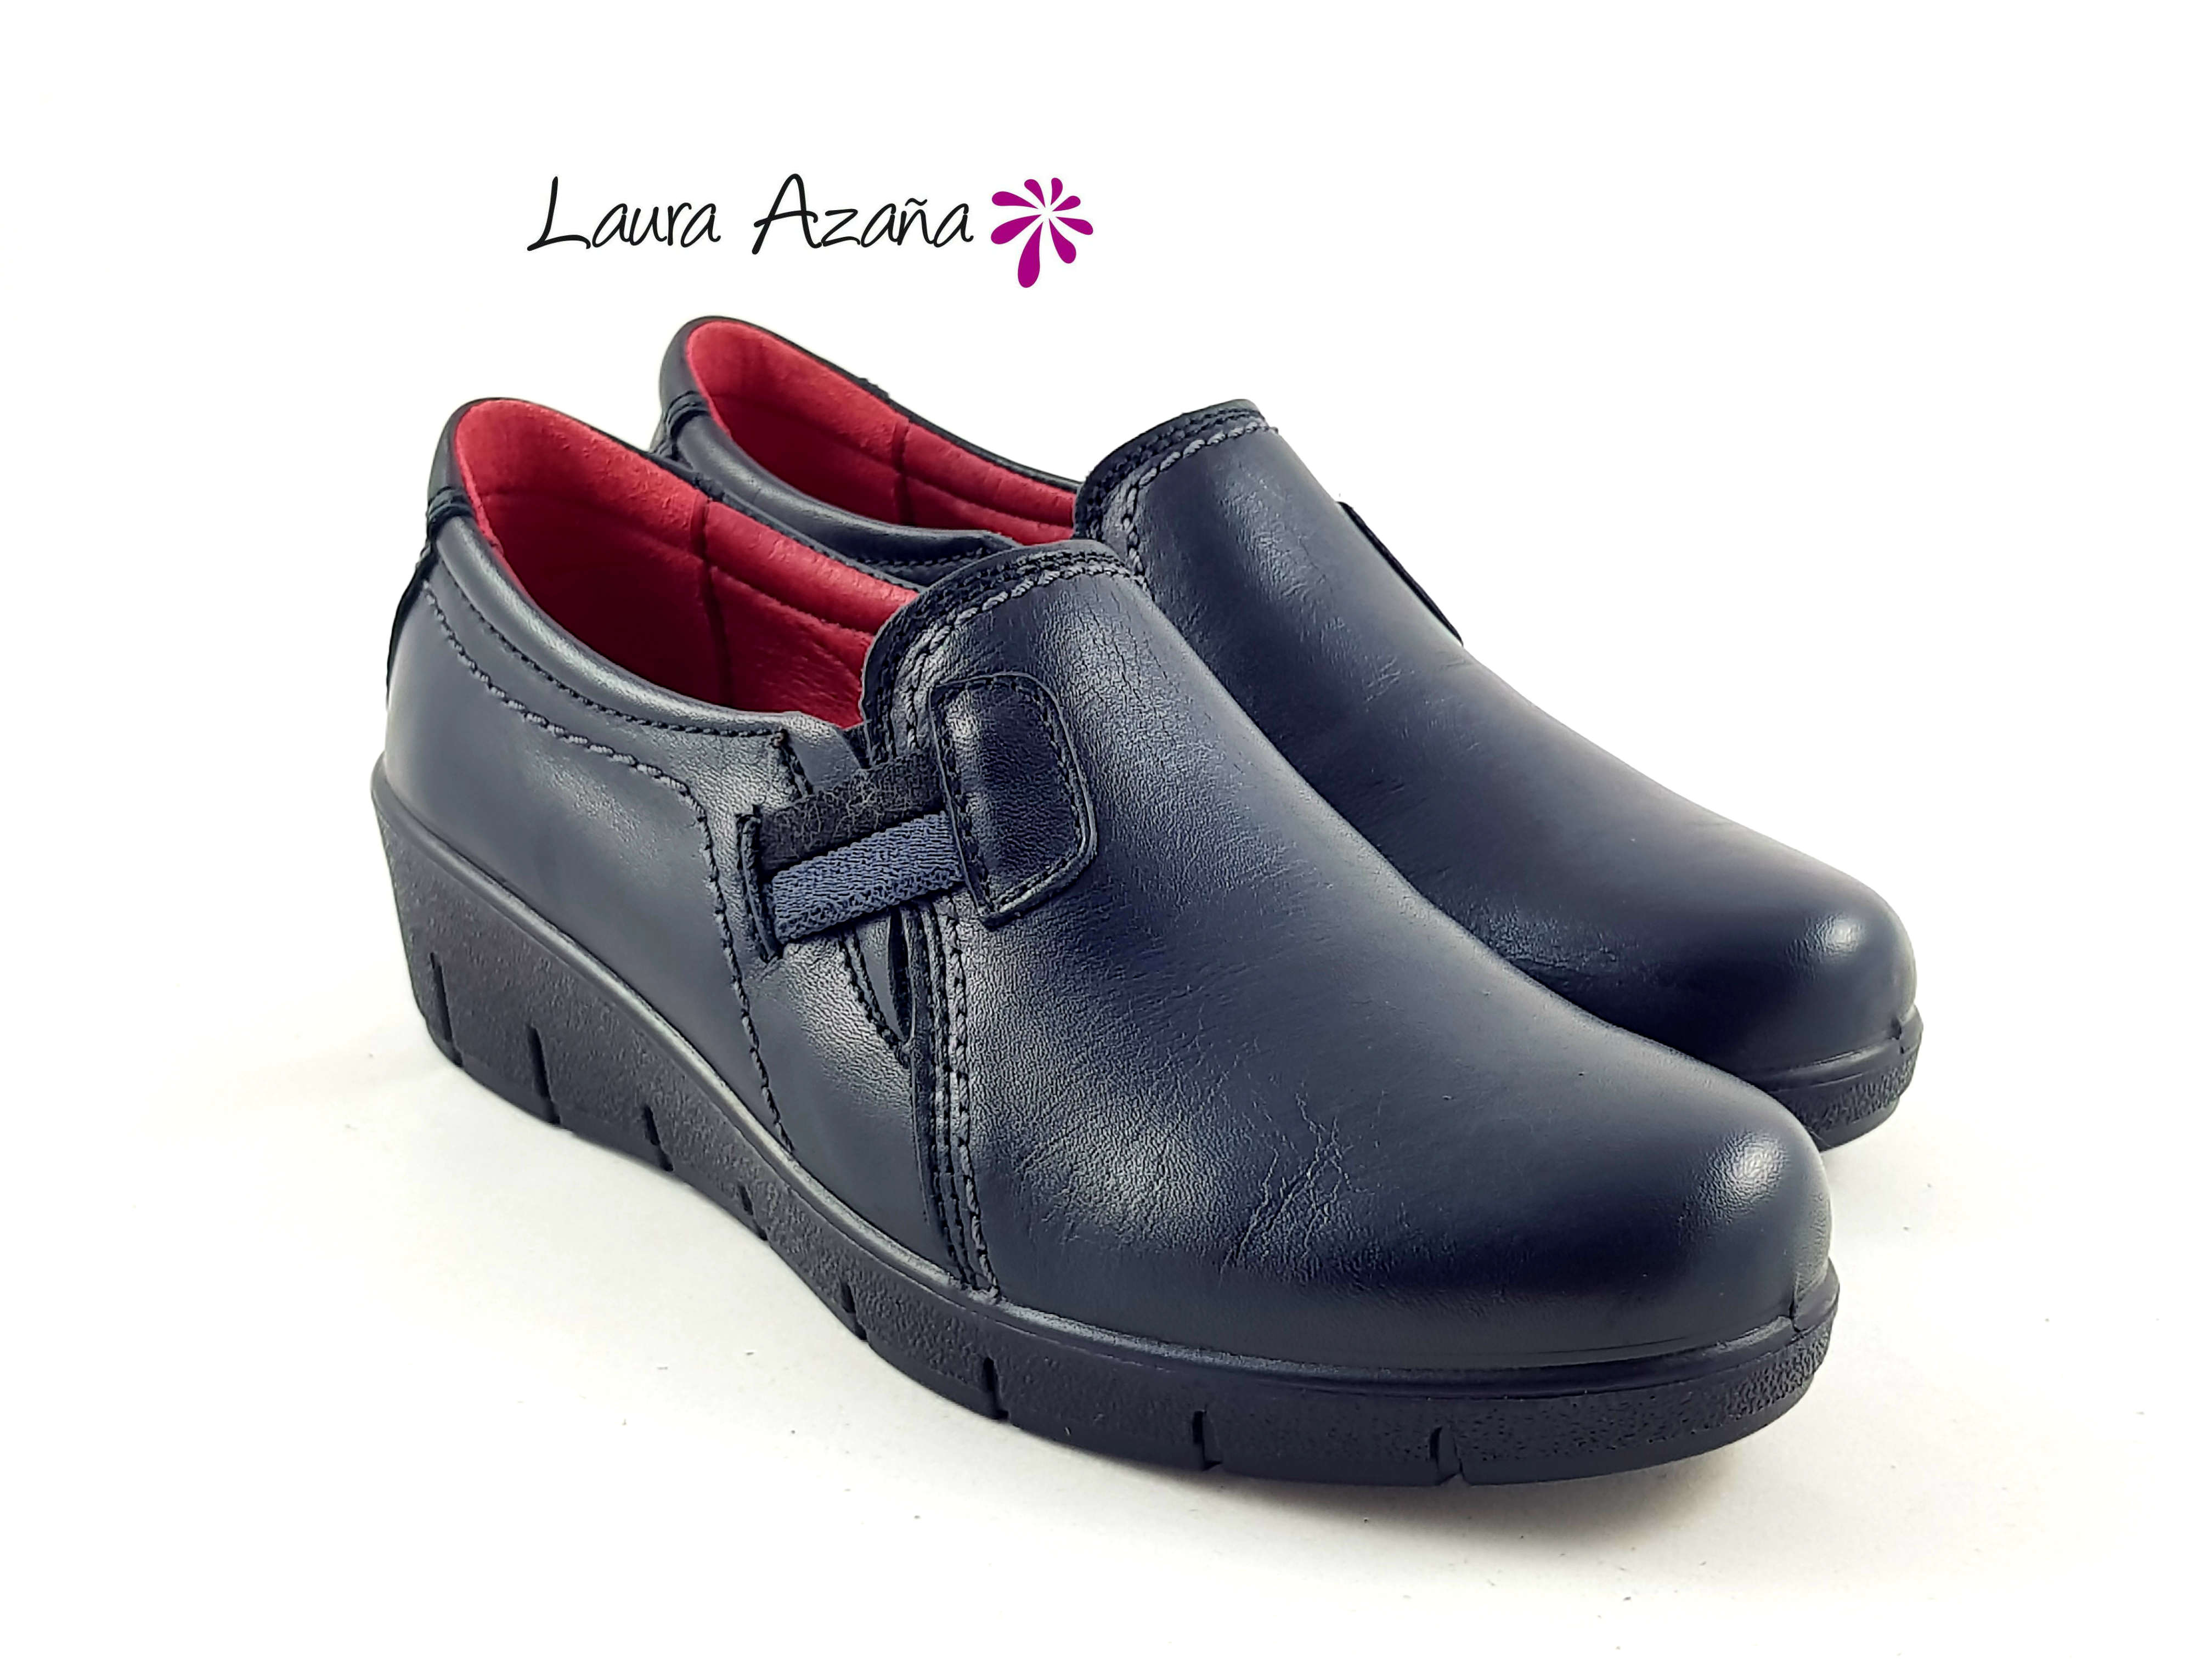 Zapatos Laura Azaña Otoño Invierno 2019 Sale - 1688241878